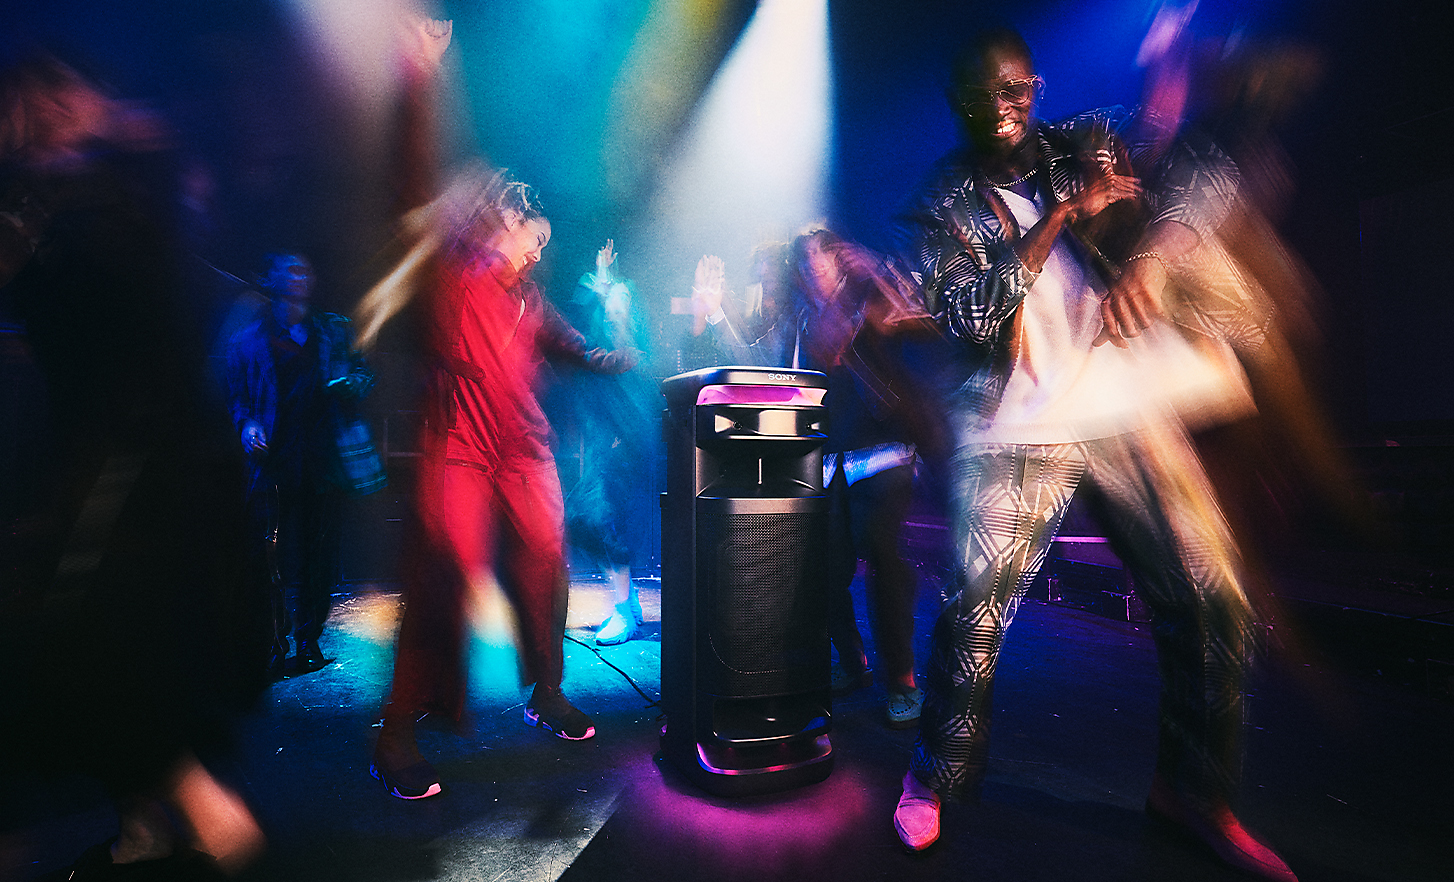 Des gens dansent dans une boîte de nuit avec l'enceinte ULT TOWER 10 qui diffuse la musique.